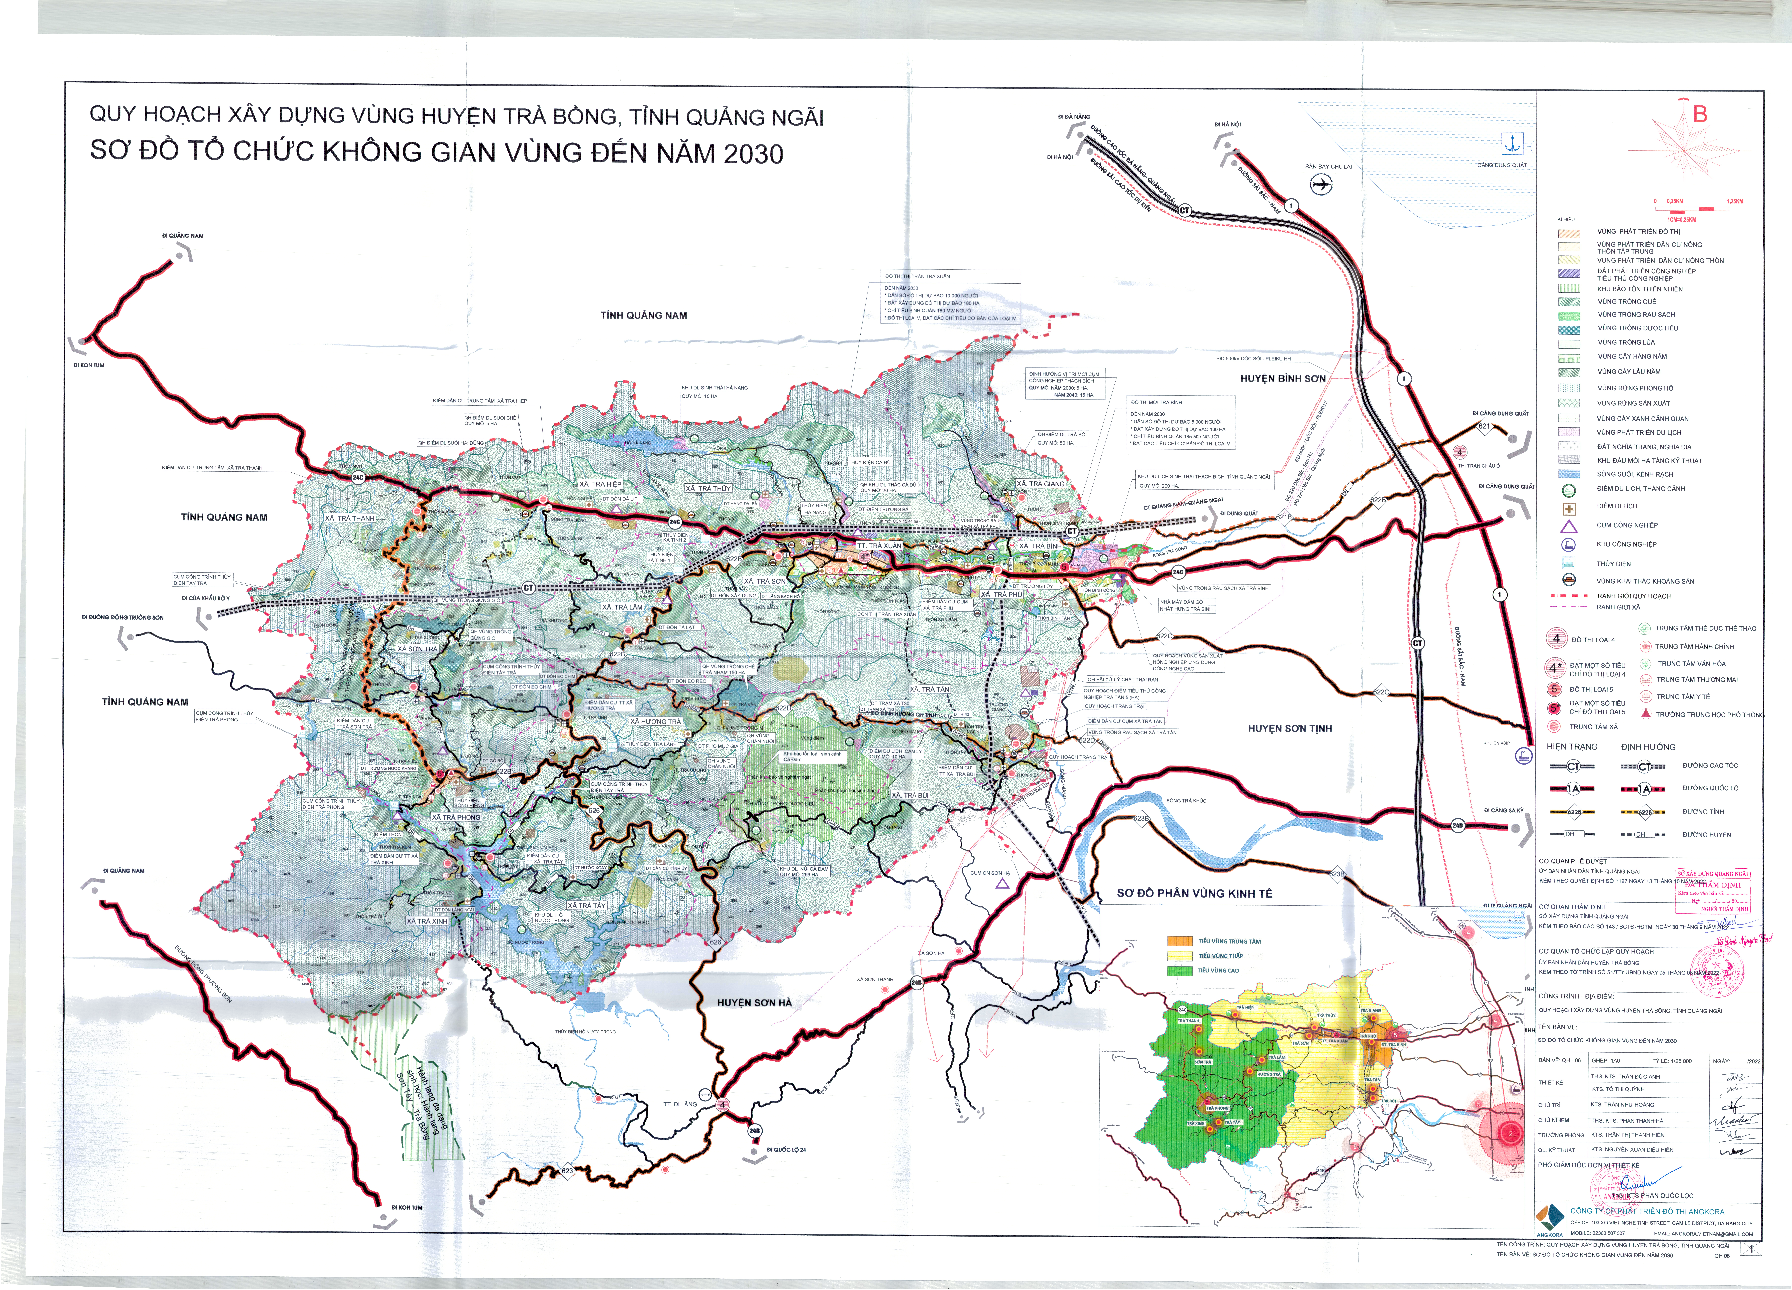 Công bố thông tin đồ án Quy hoạch xây dựng vùng huyện Trà Bồng, tỉnh Quảng Ngãi